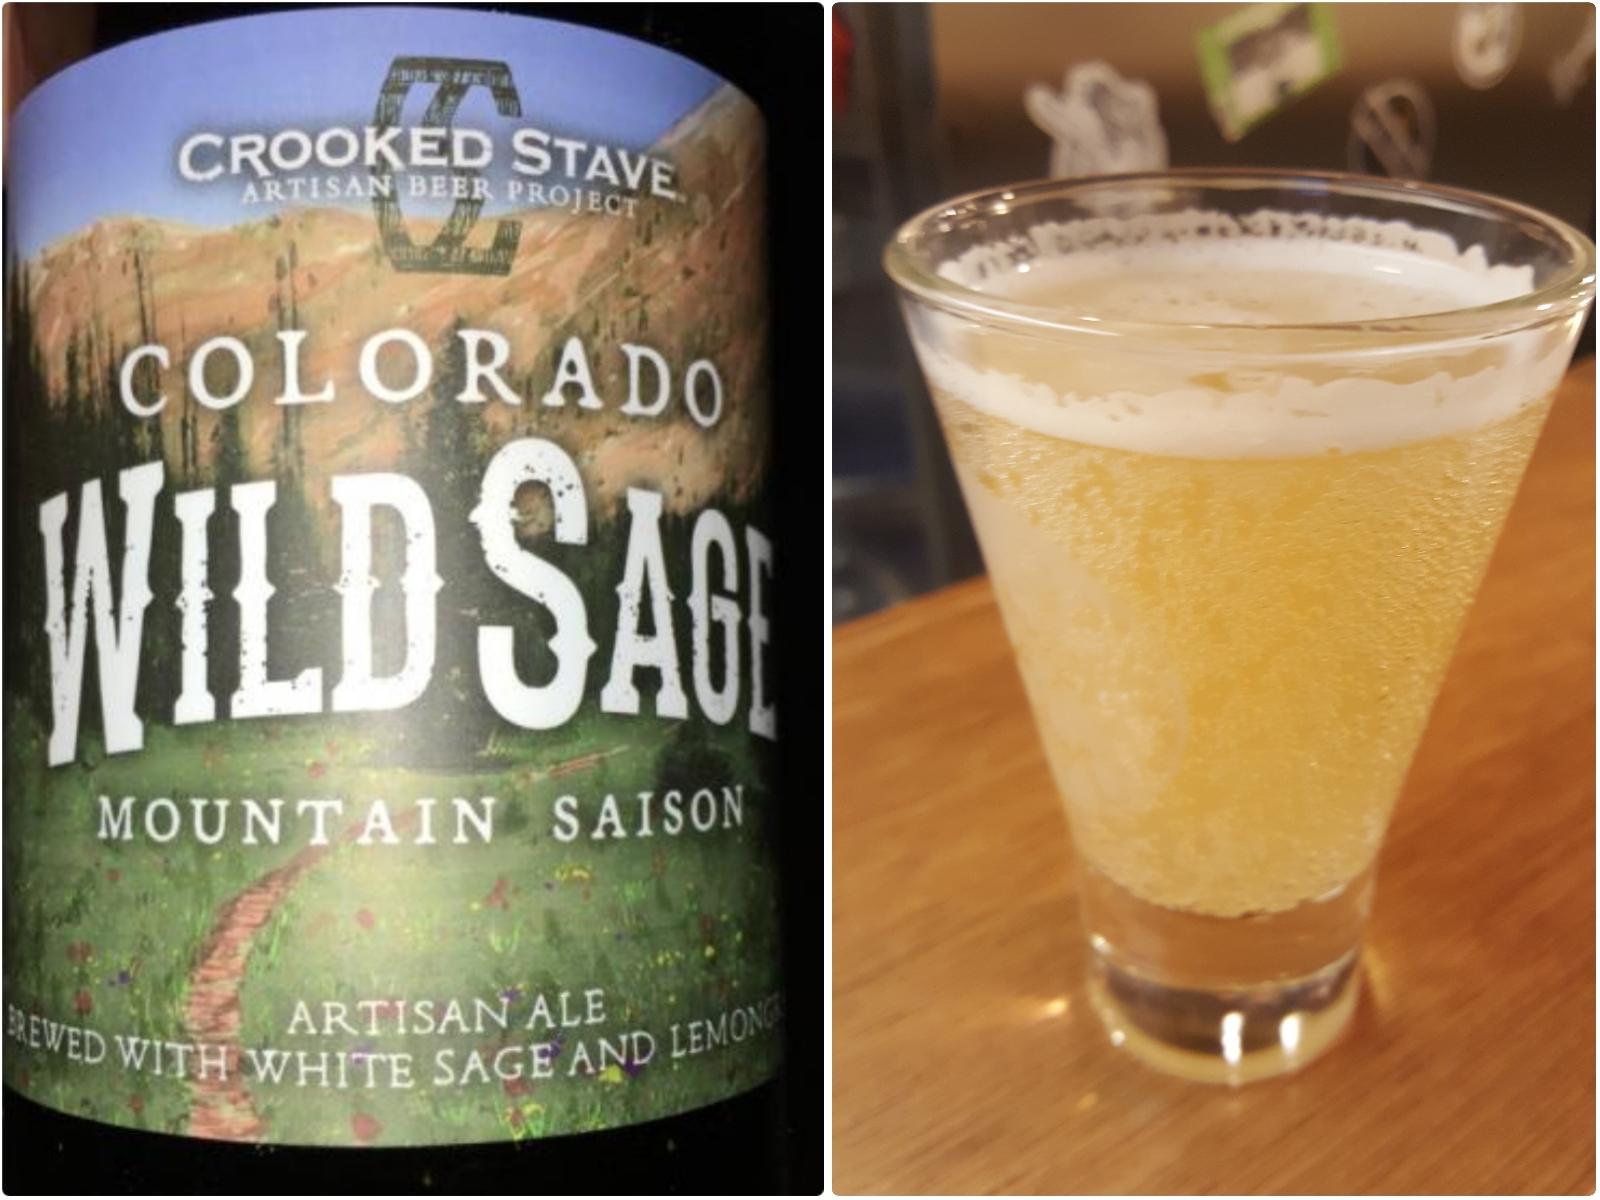 Colorado Wild Sage Mountain Saison